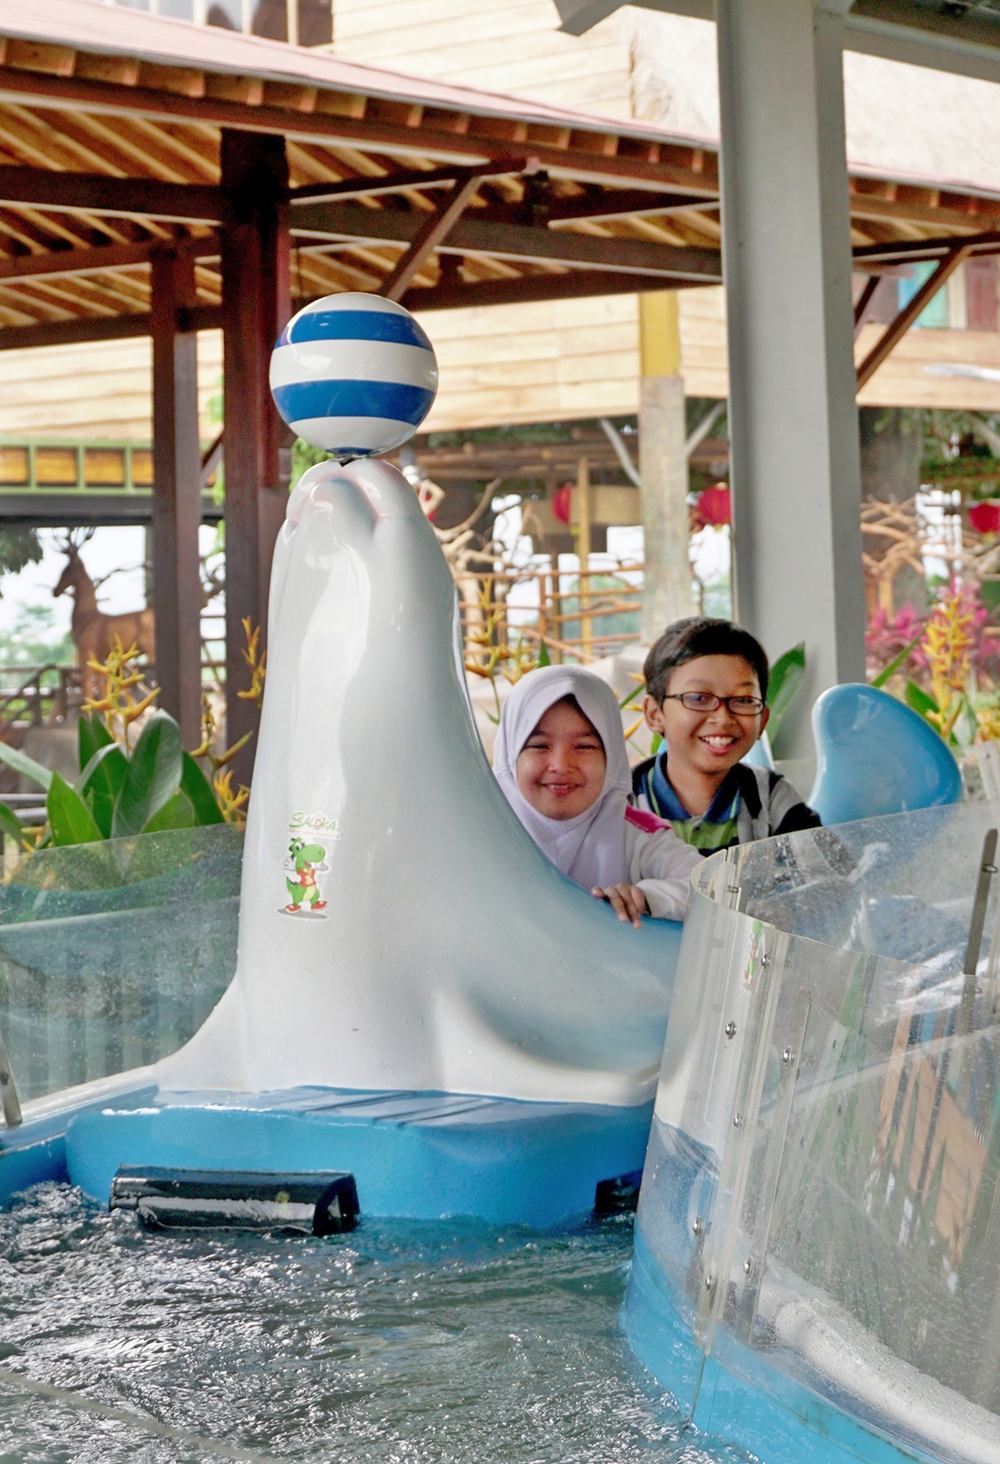 10 Keseruan di Saloka, taman tematik baru terbesar di Jawa Tengah